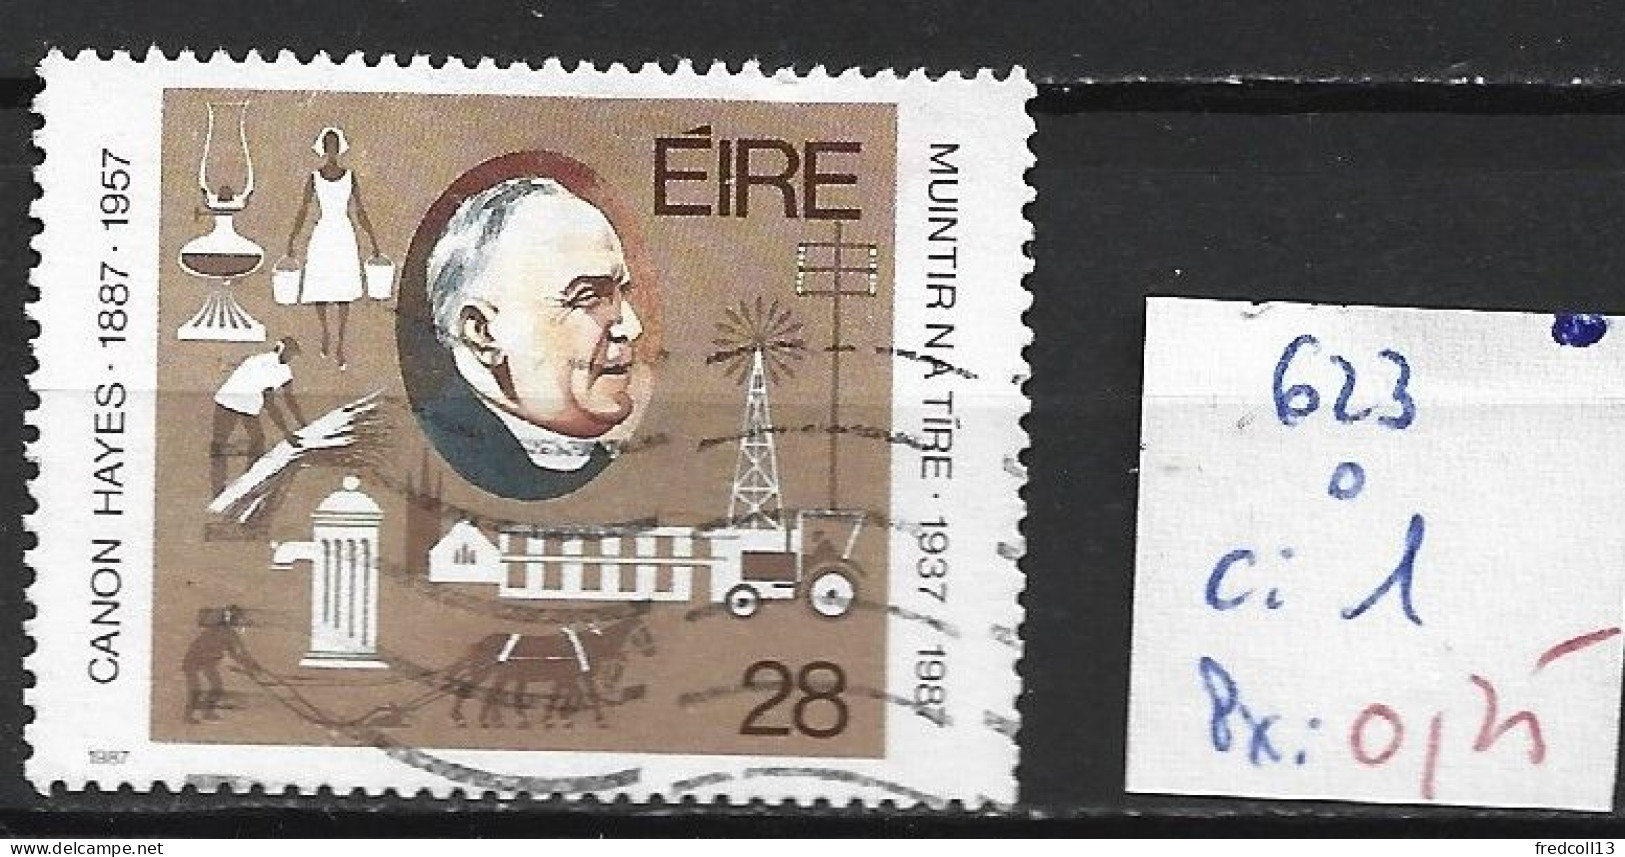 IRLANDE 623 Oblitéré Côte 1 € - Used Stamps